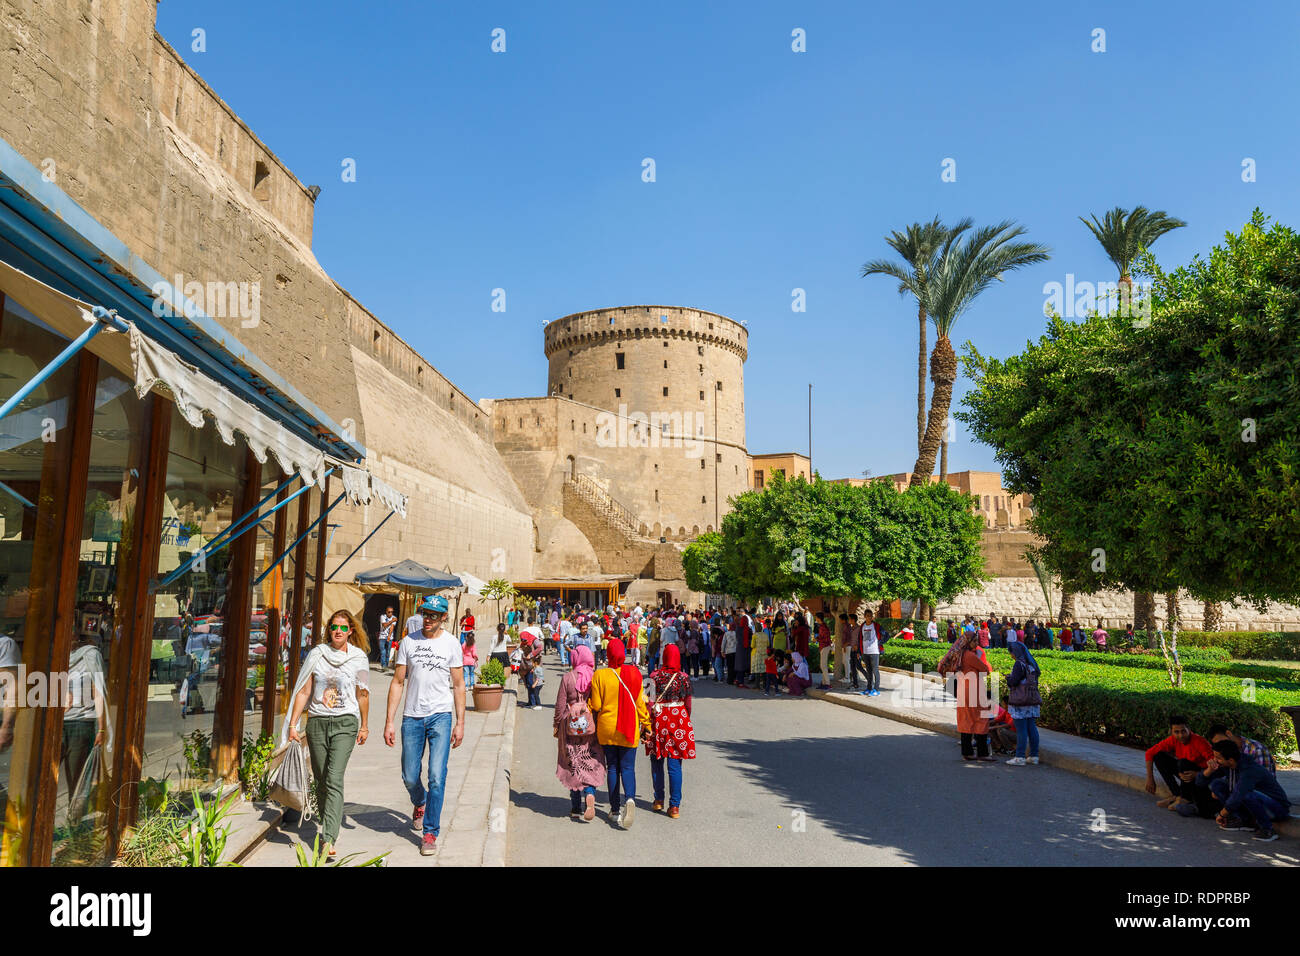 Anzeigen außerhalb der Mauern der Eingang zur Zitadelle von Saladin, einem mittelalterlichen islamischen Festung in Kairo, Ägypten Stockfoto